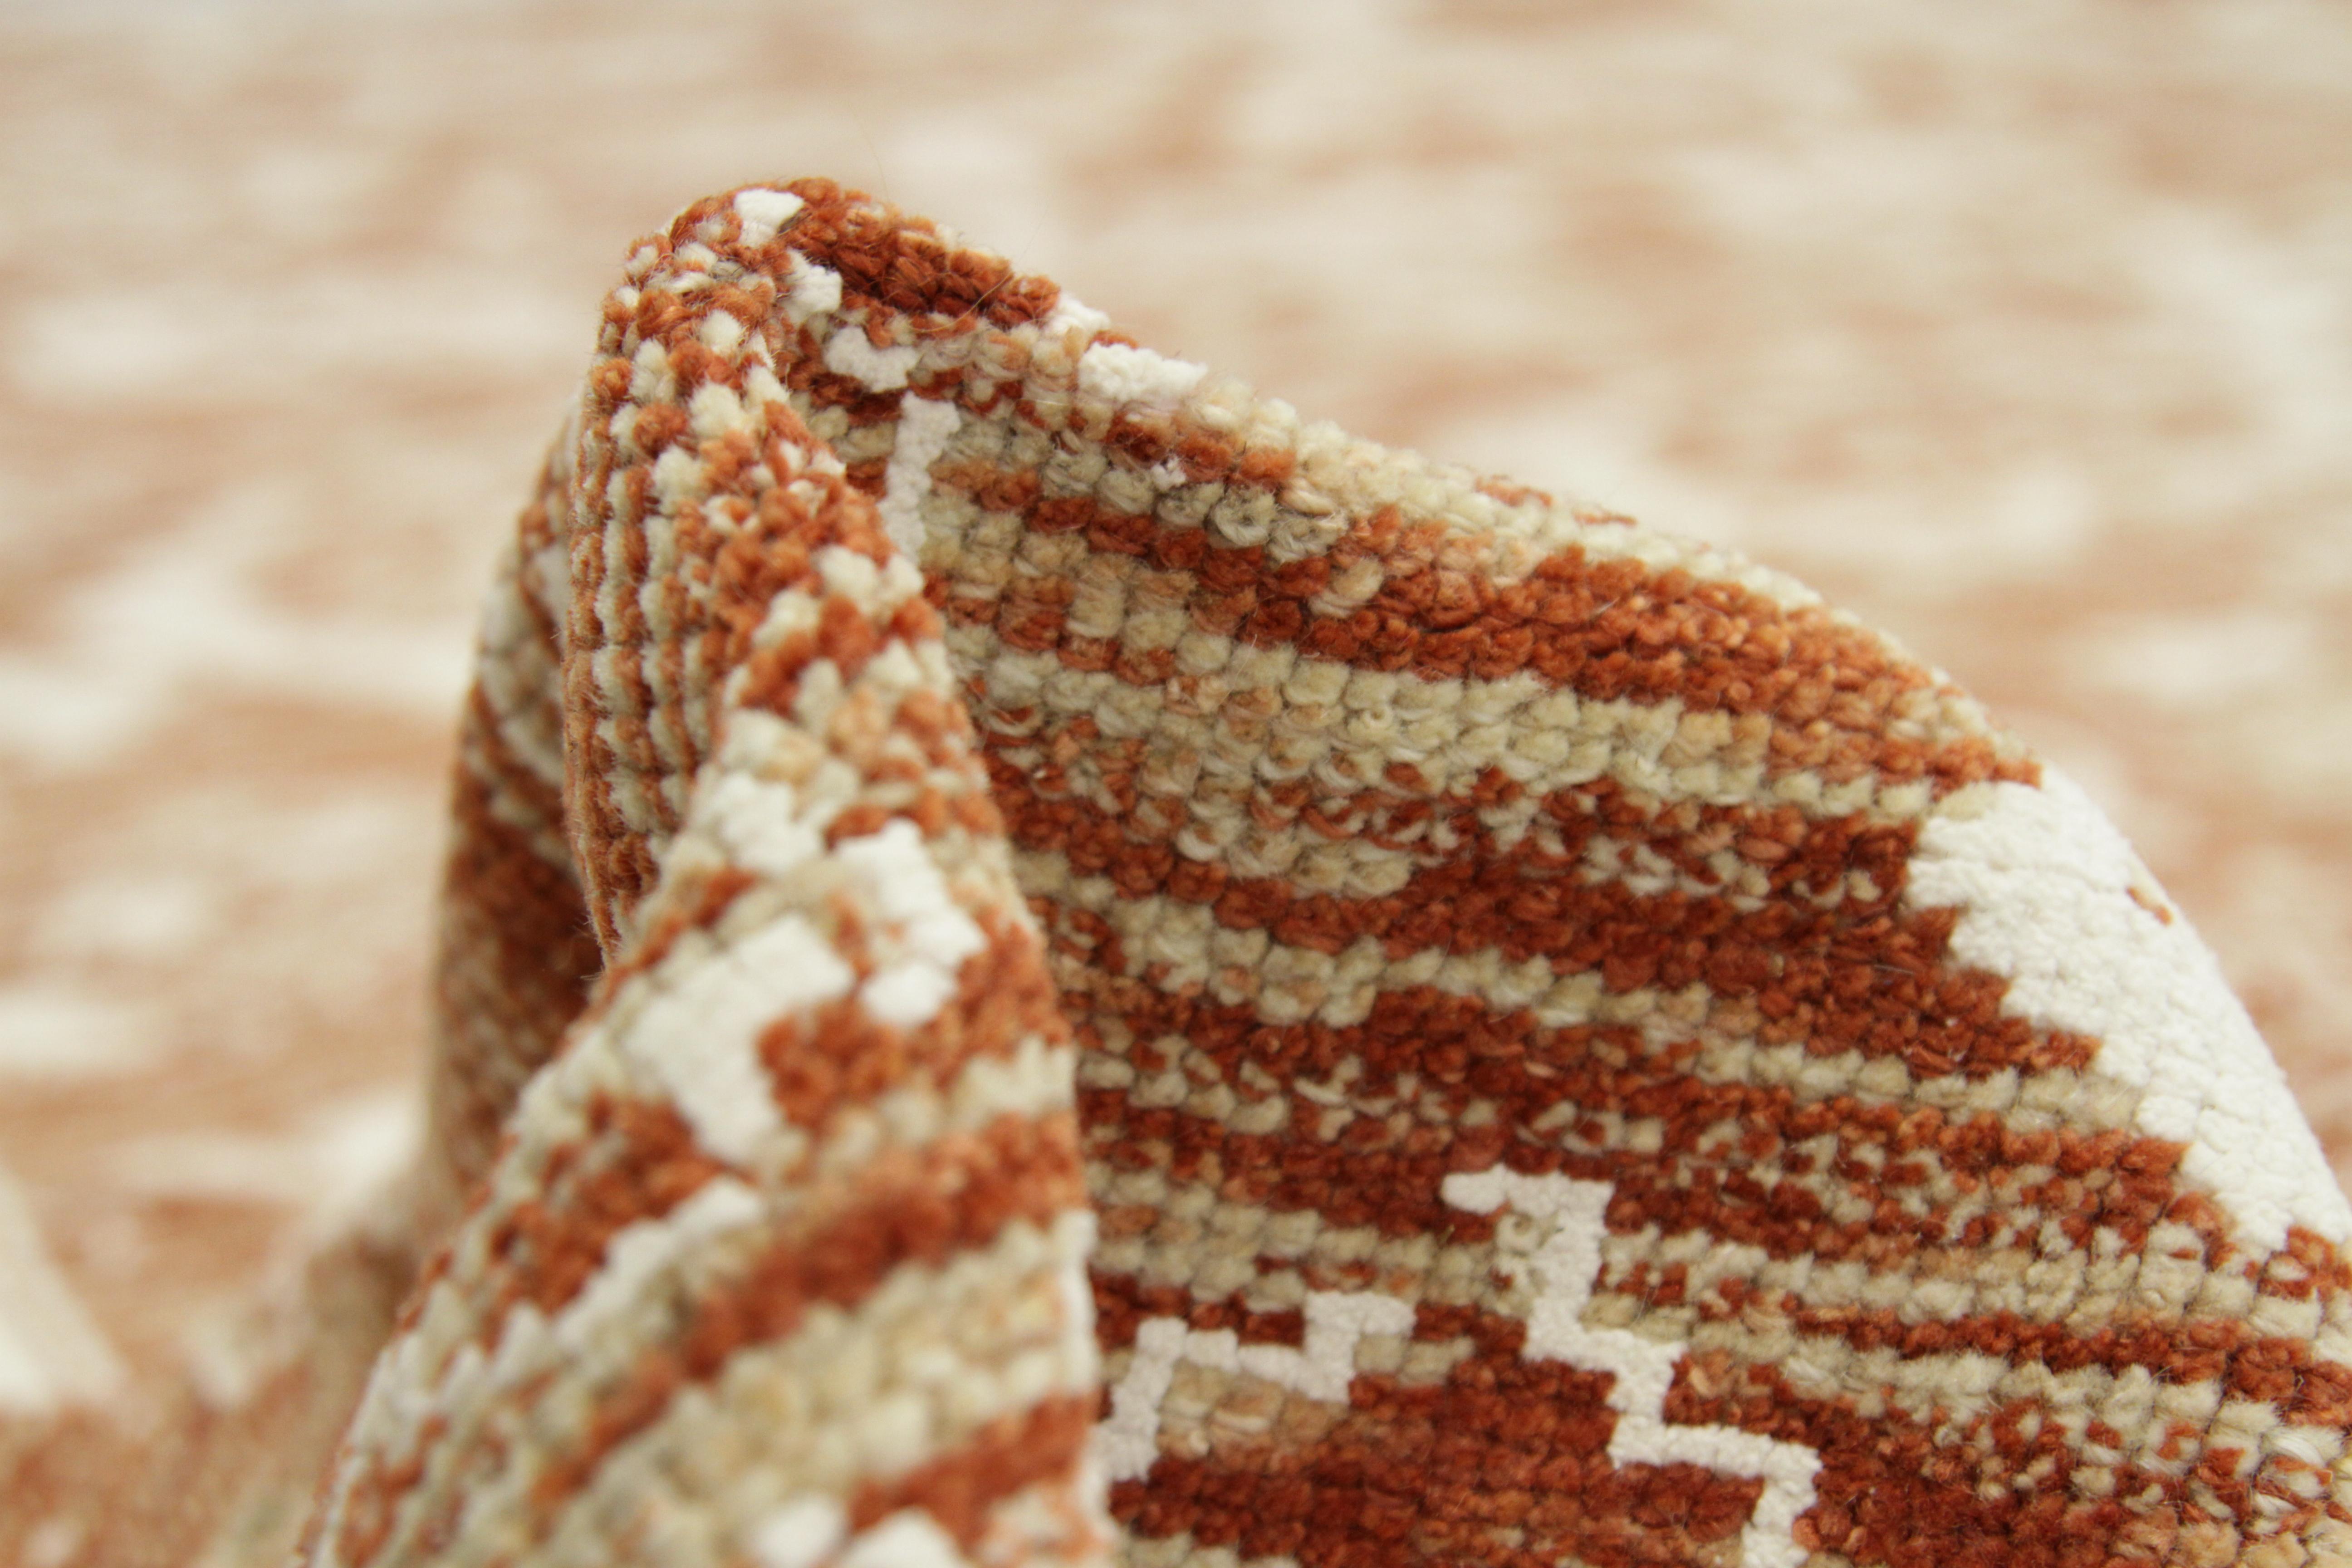 Moderner Oushak-Teppich aus hochwertiger Wolle und 100% organischen Farbstoffen. Es hat einen feinen rostfarbenen Hintergrund, der mit zarten Blumen und von der Natur inspirierten Figuren in Weiß durchwebt ist. Er ist eine großartige Teppichoption